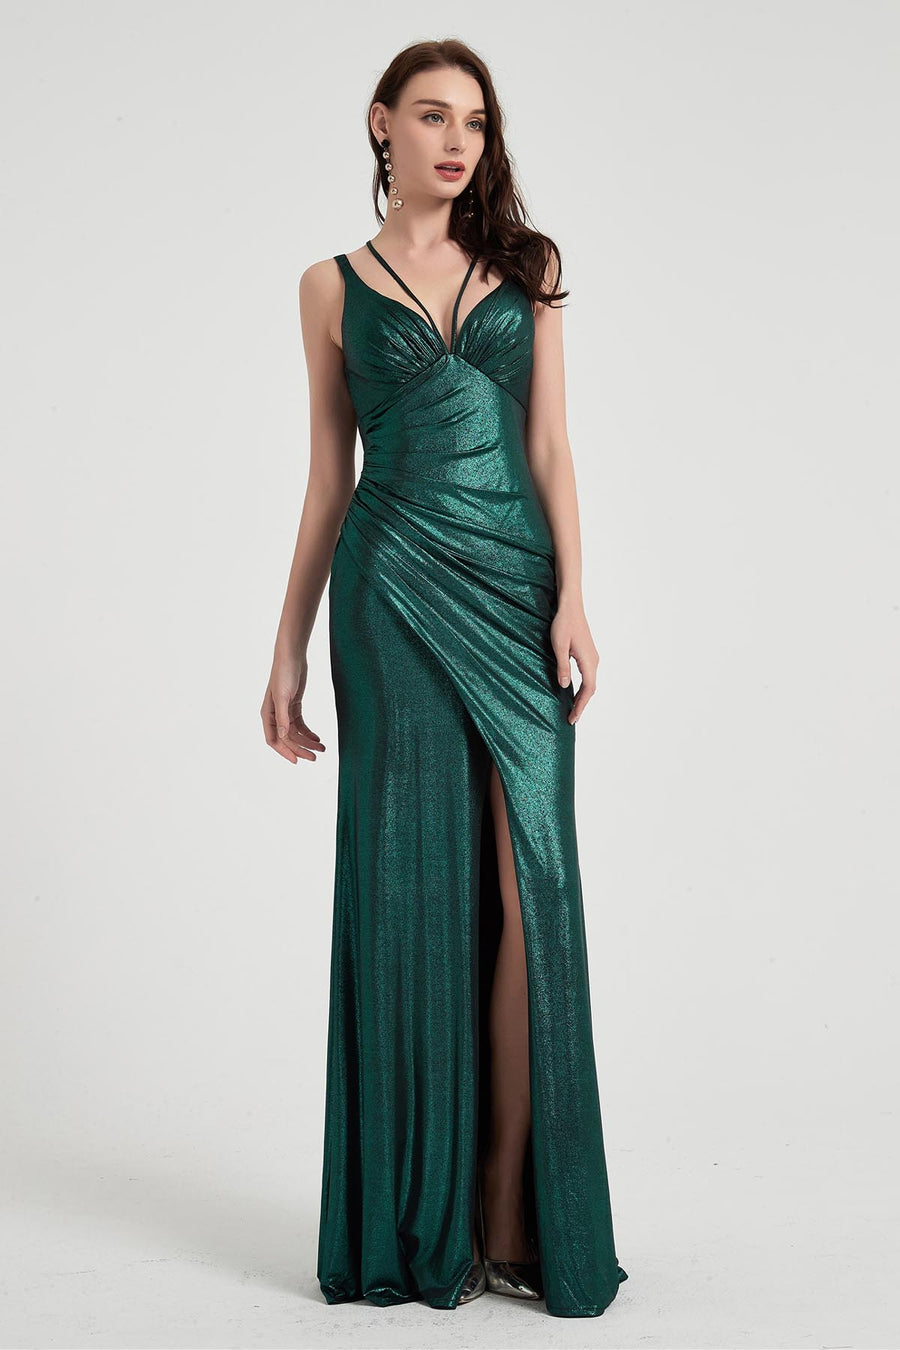 Mermaid/Trumpet V-neck Sleeveless Full Length Polyester Promo Dresses